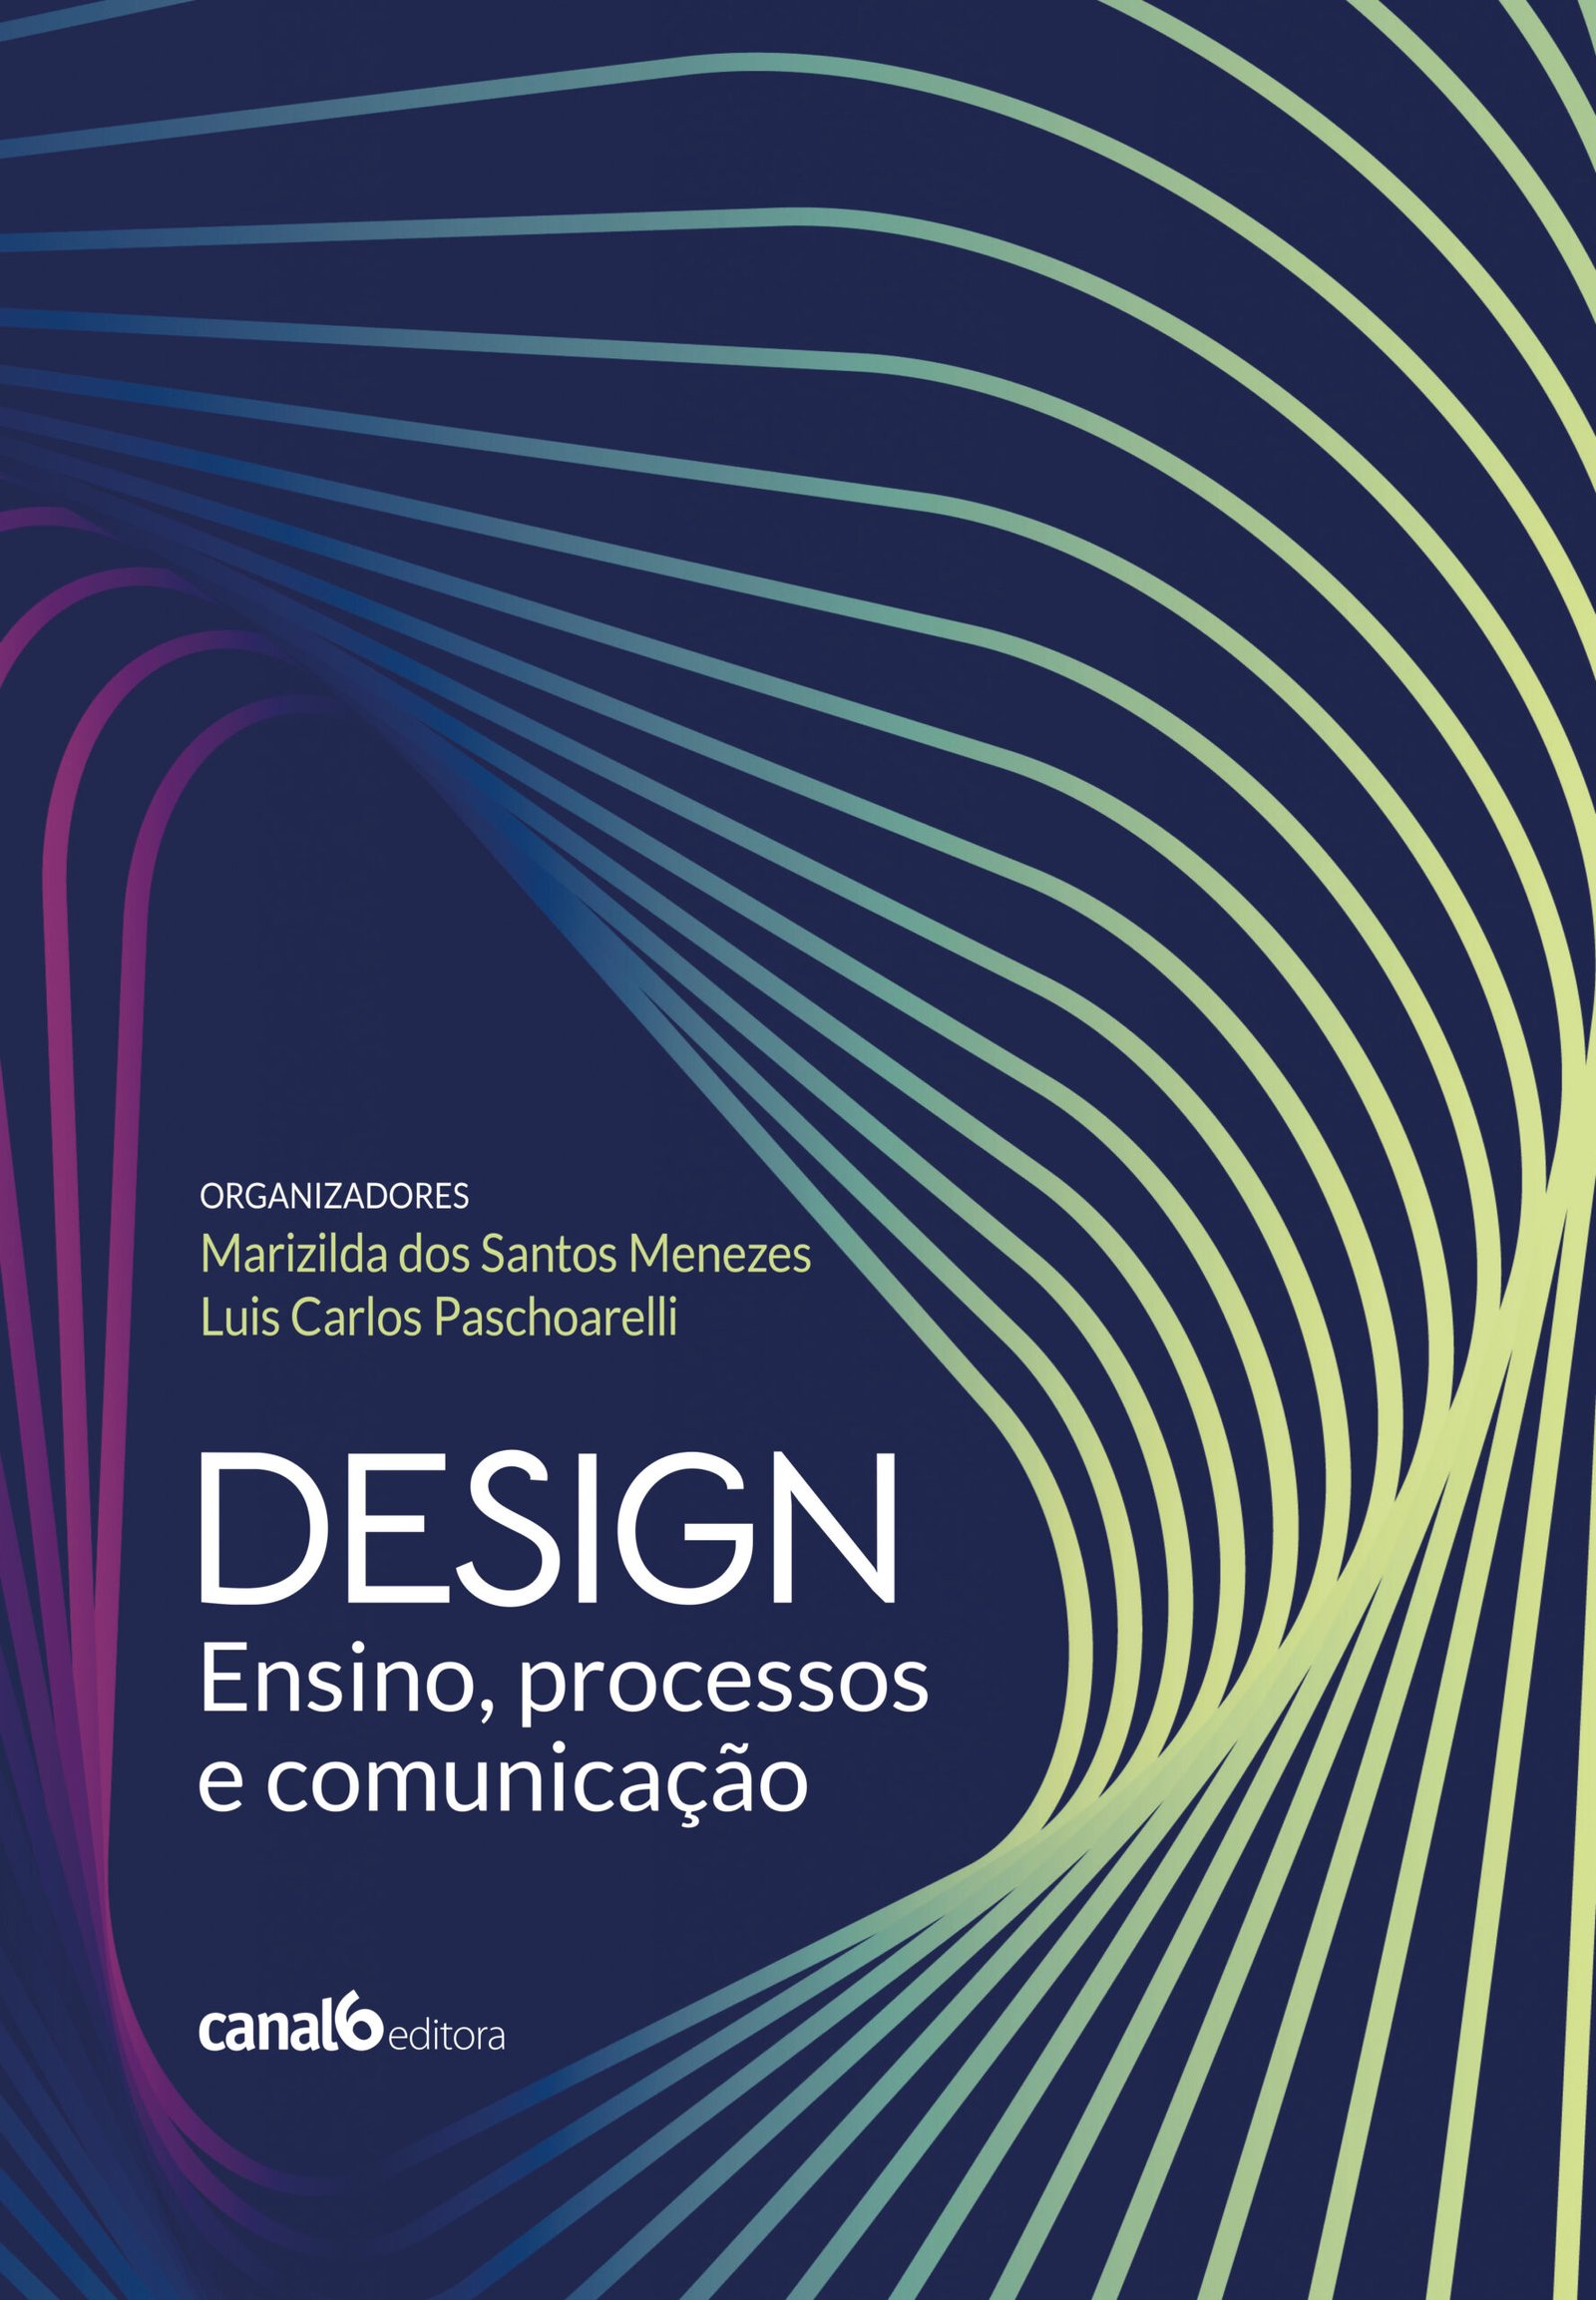 Design_ensino processos e comunicacao